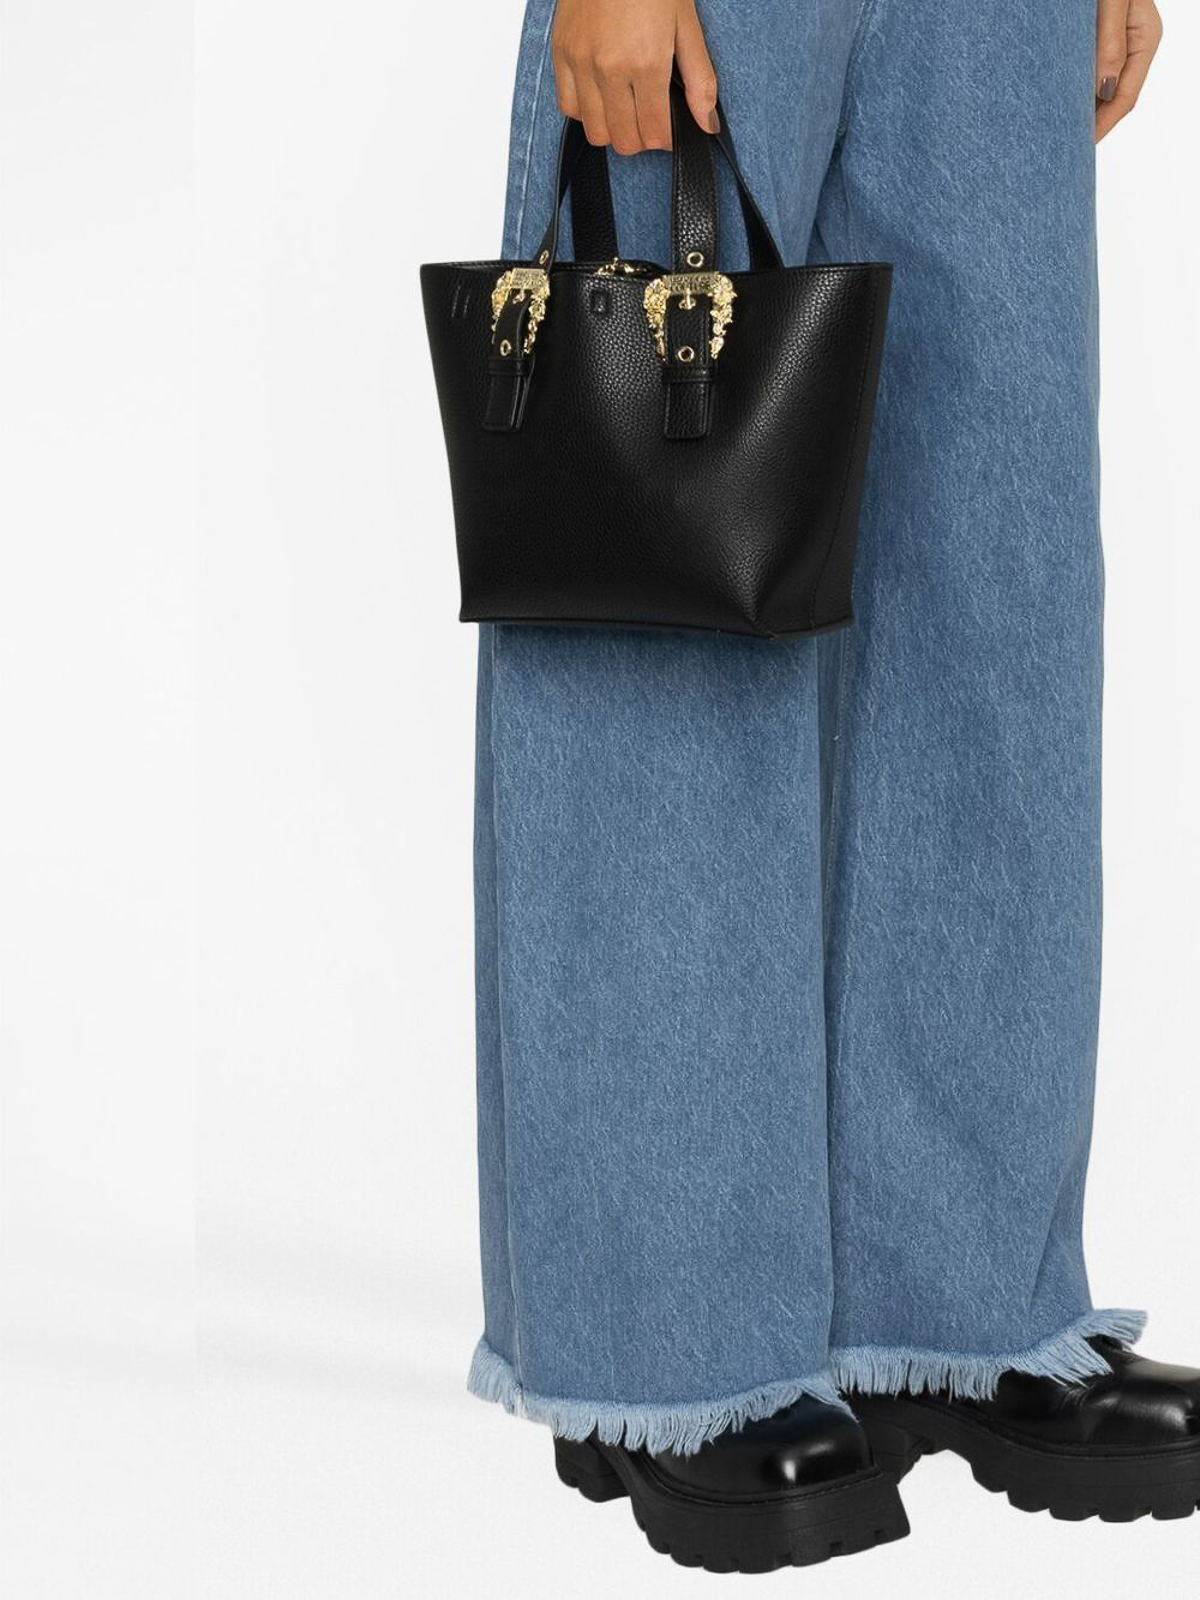 Versace Women's 100% Textured Leather Handbag V-Logo Tote Shoulder Bag 